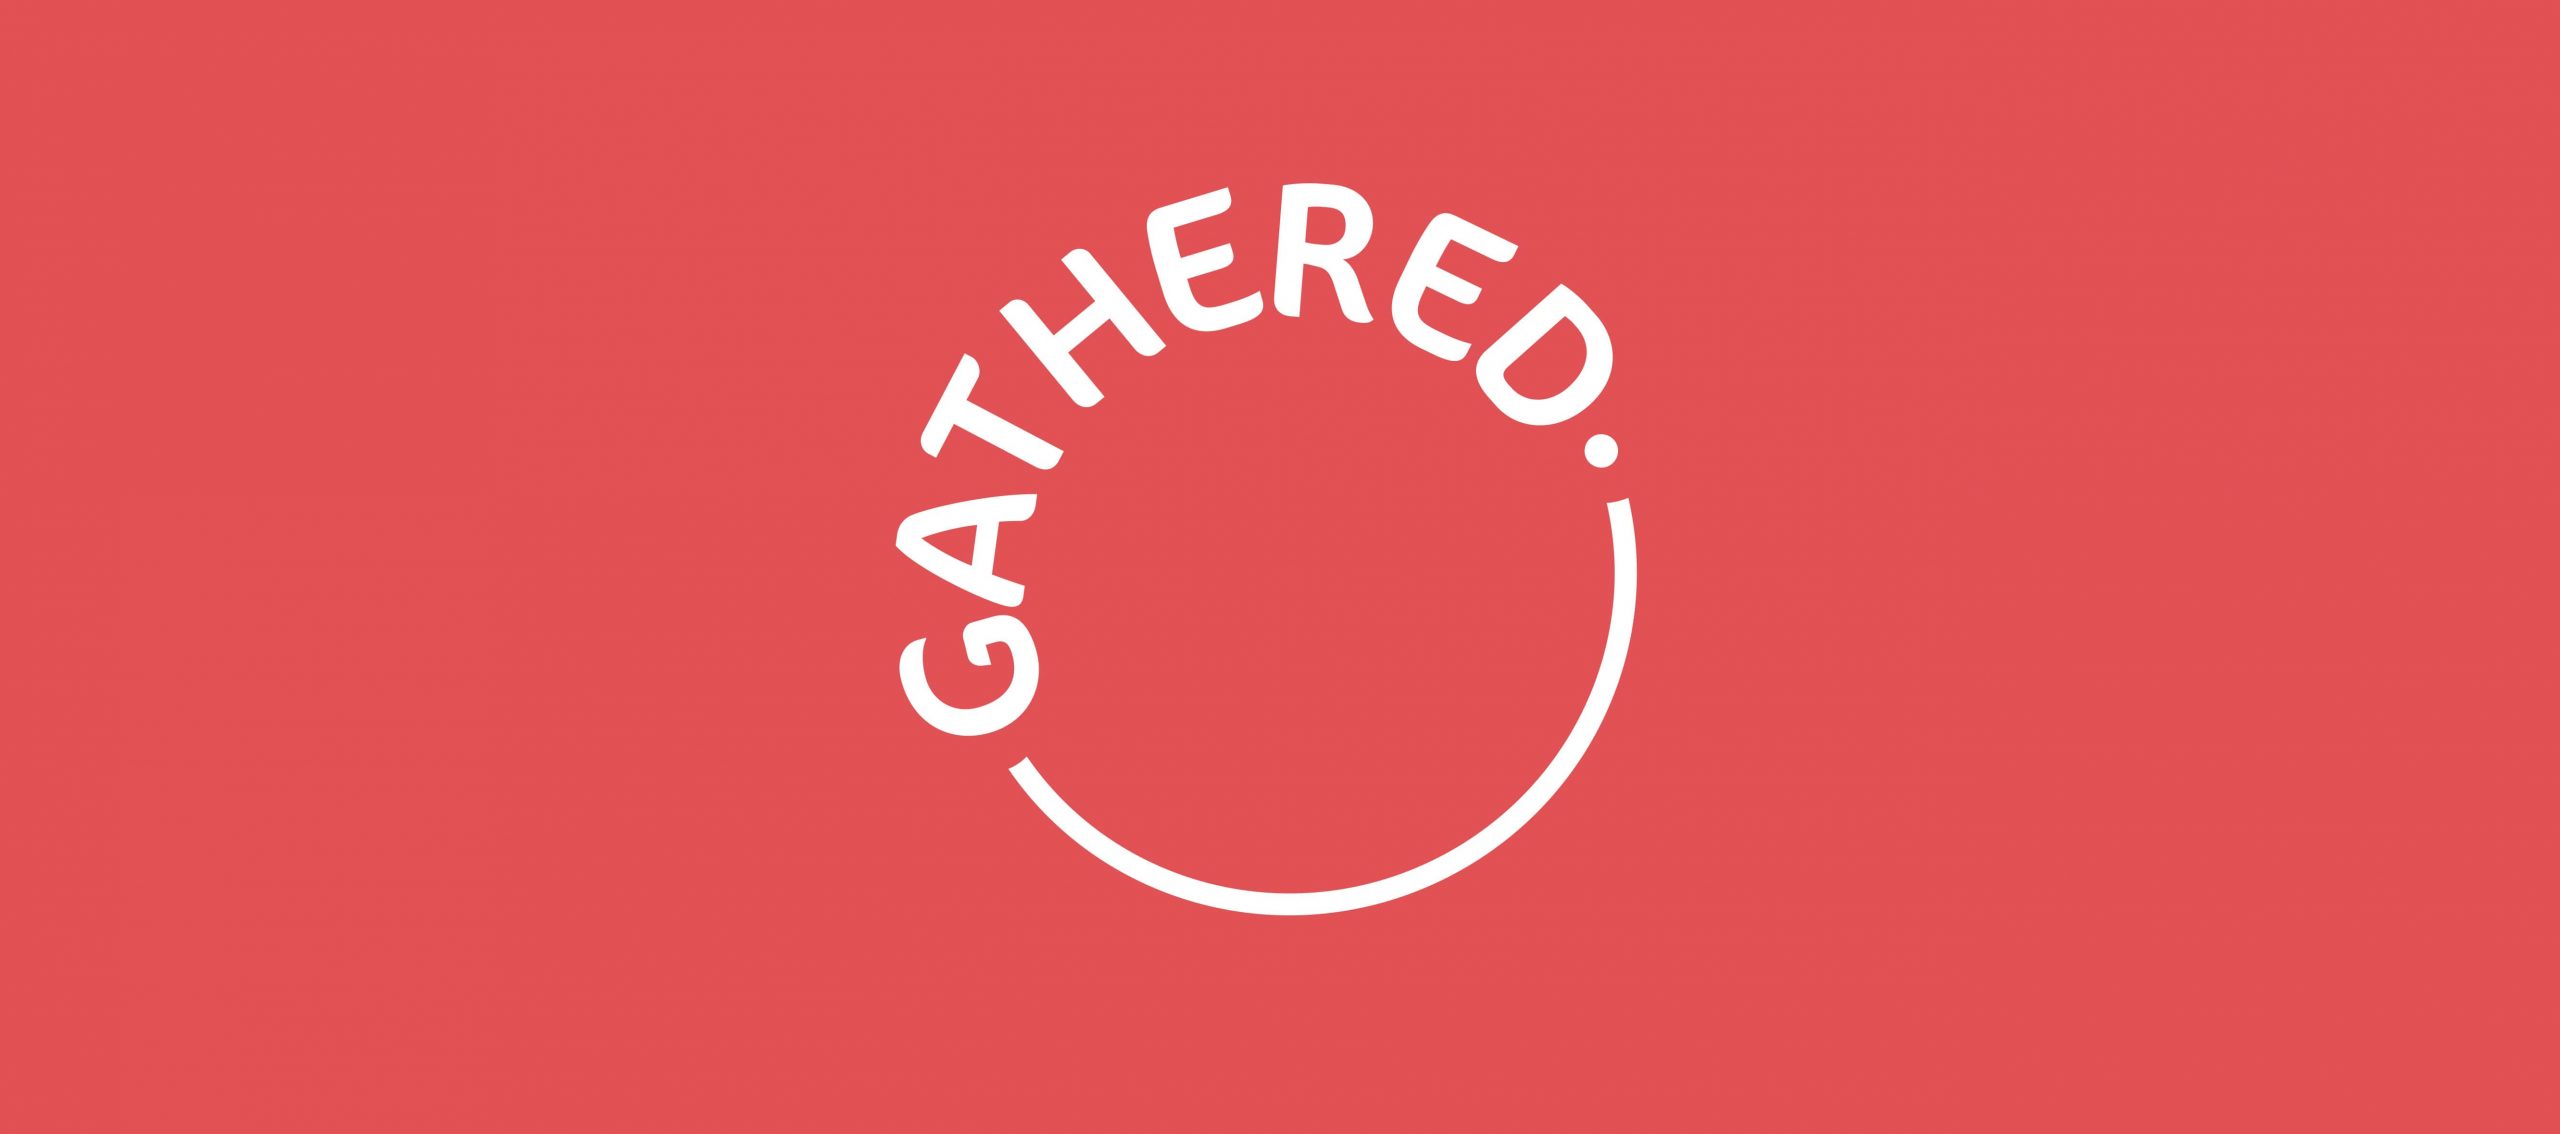 Gathered Logo